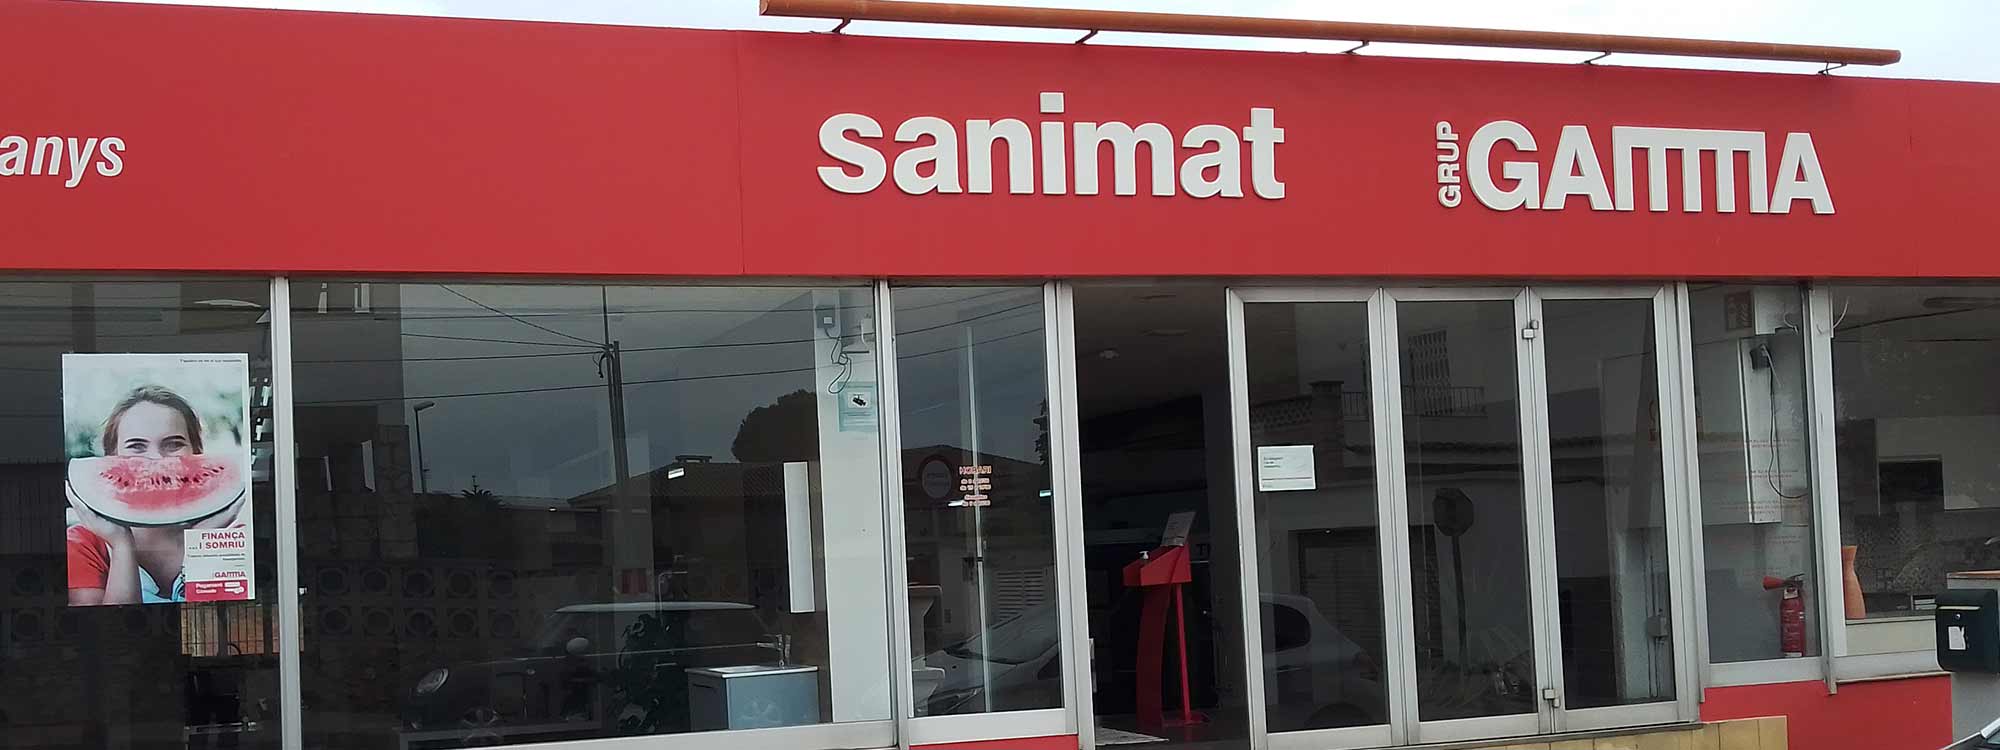 Conozca a Sanimat Gamma, disponemos de todo lo que busca en cocinas, baños y reformas en general